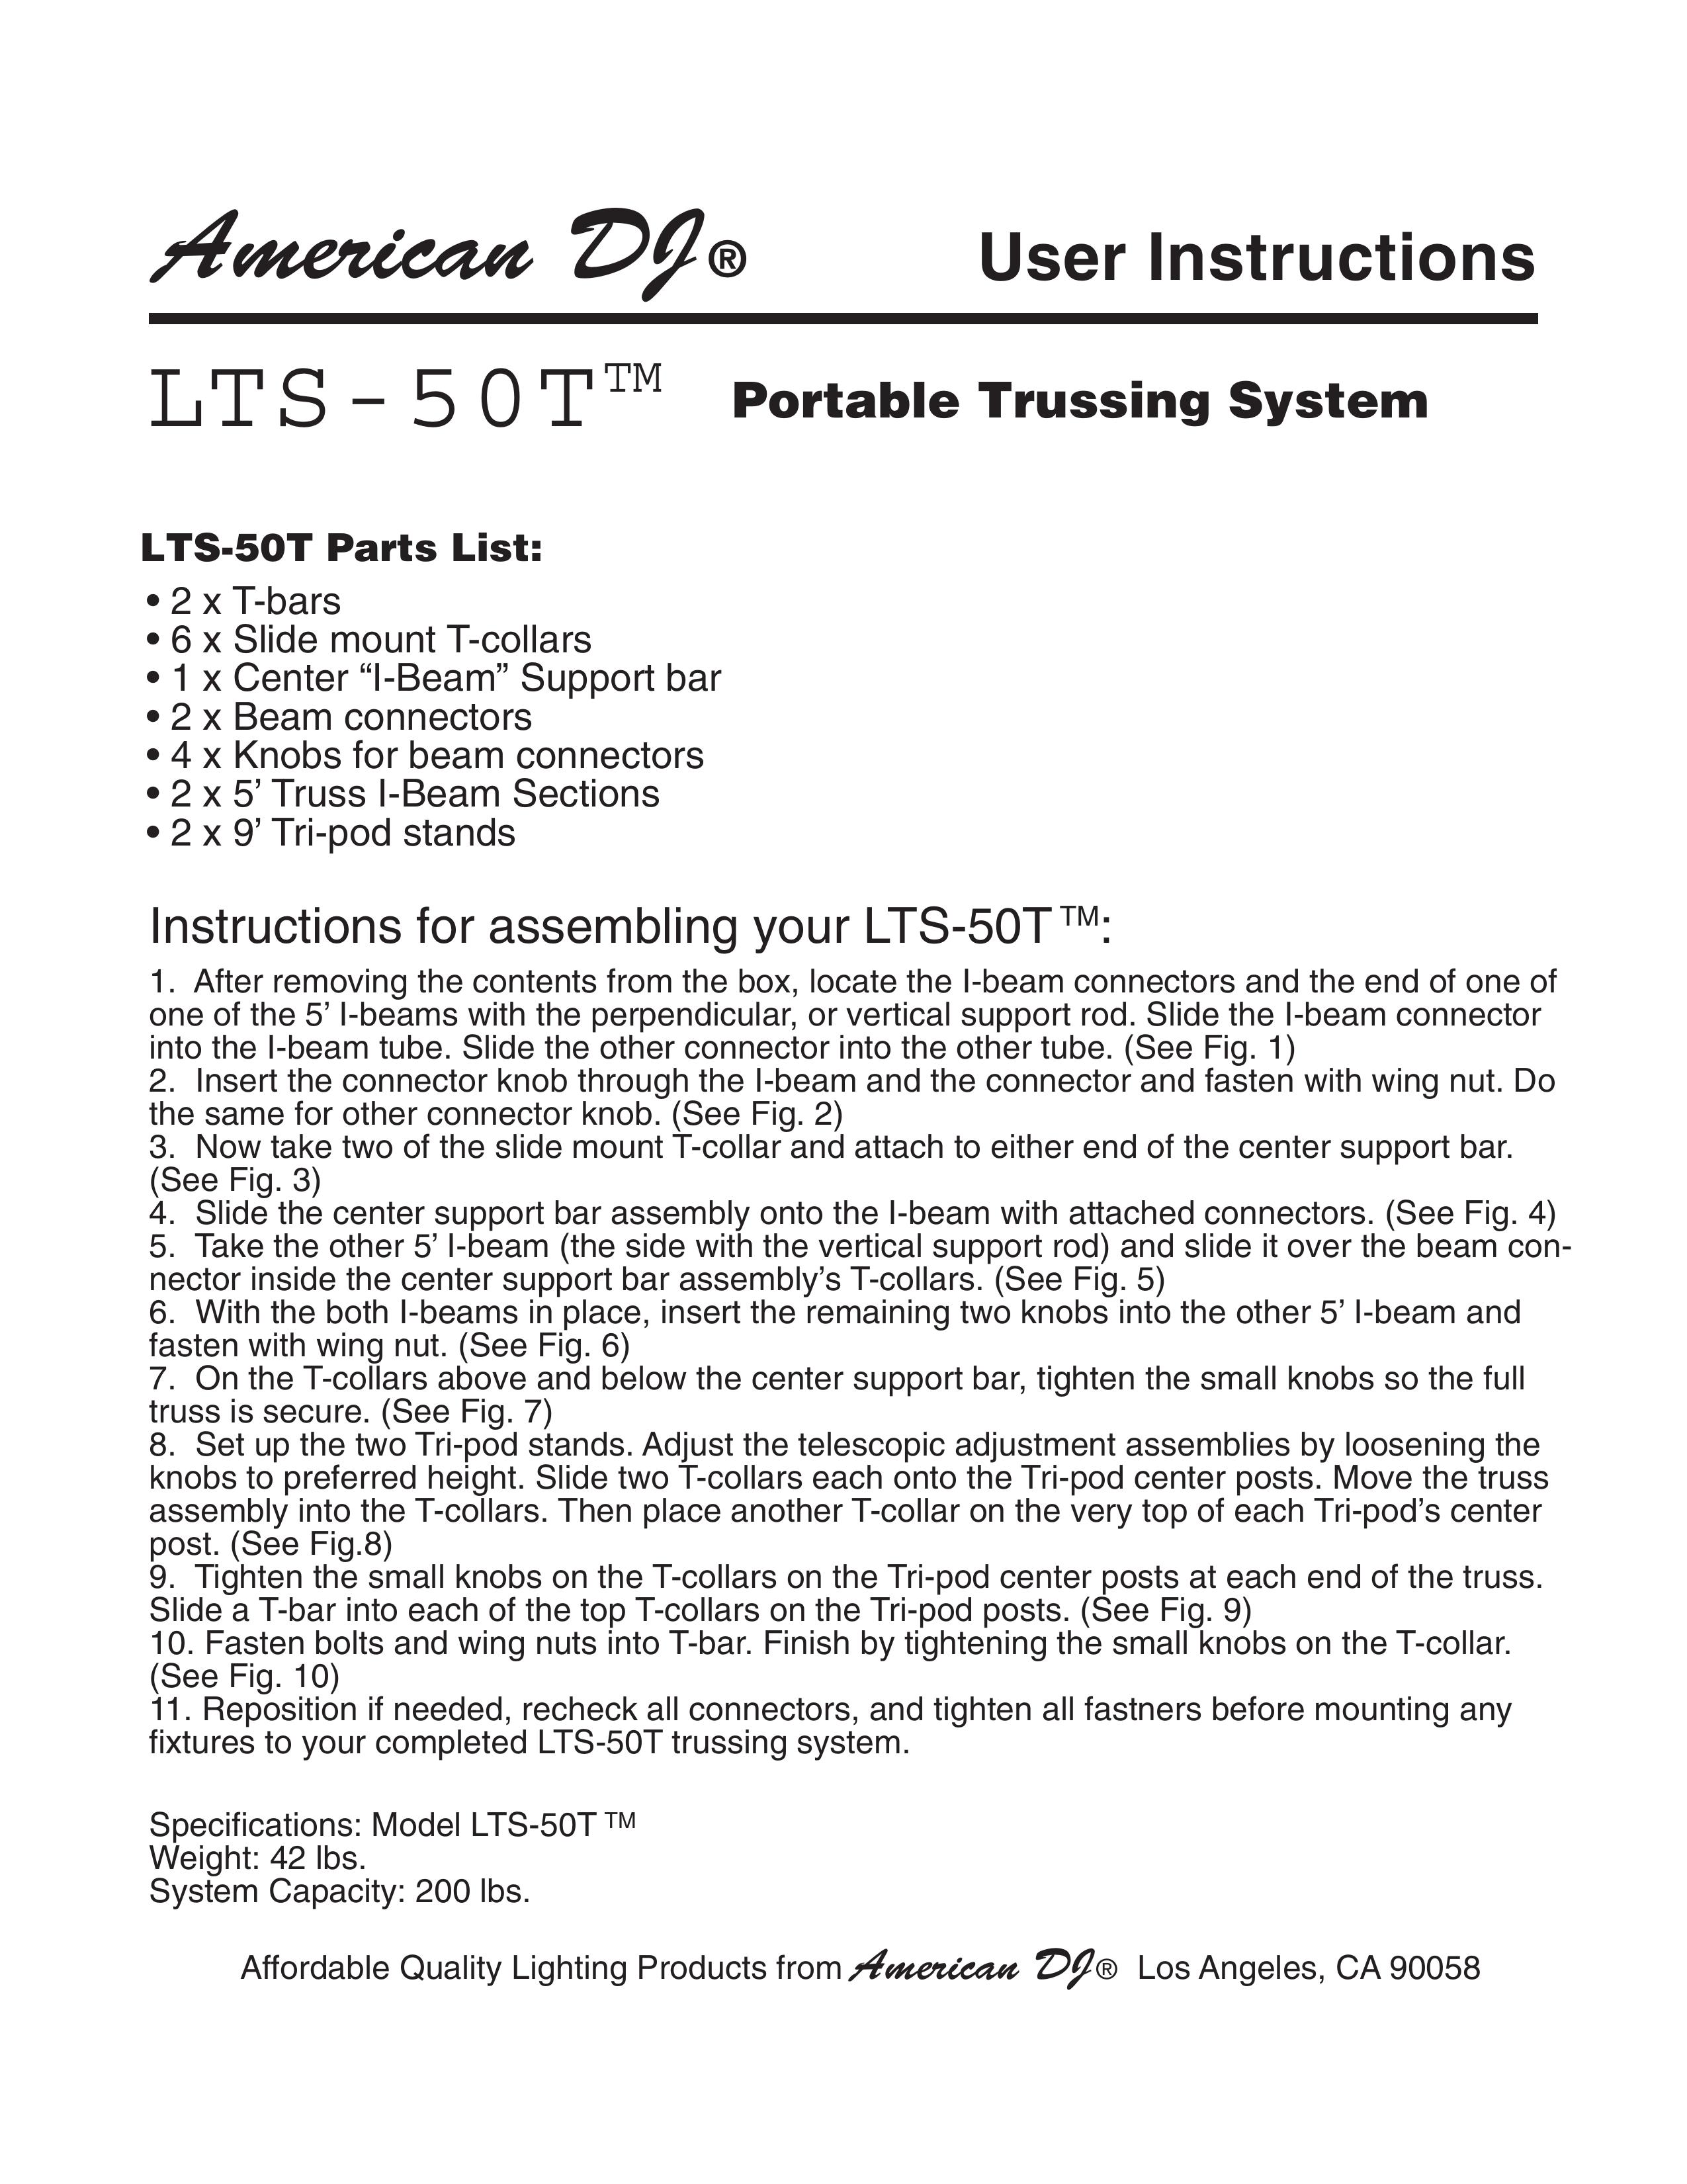 American DJ LTS-50T DJ Equipment User Manual